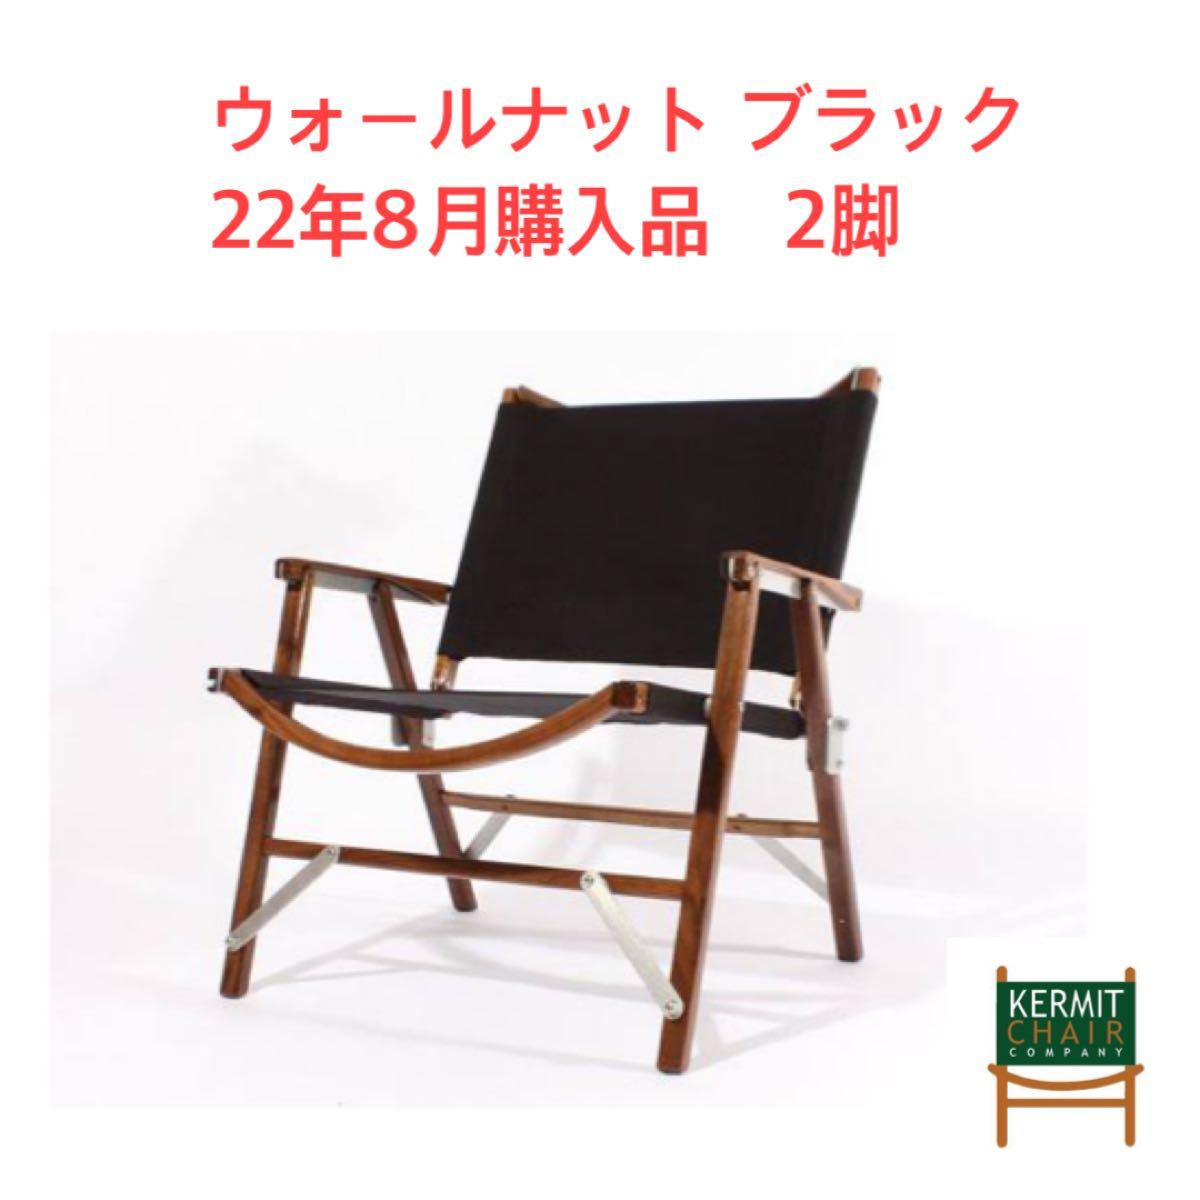 カーミット チェアKermit Chair 正規品 ②-